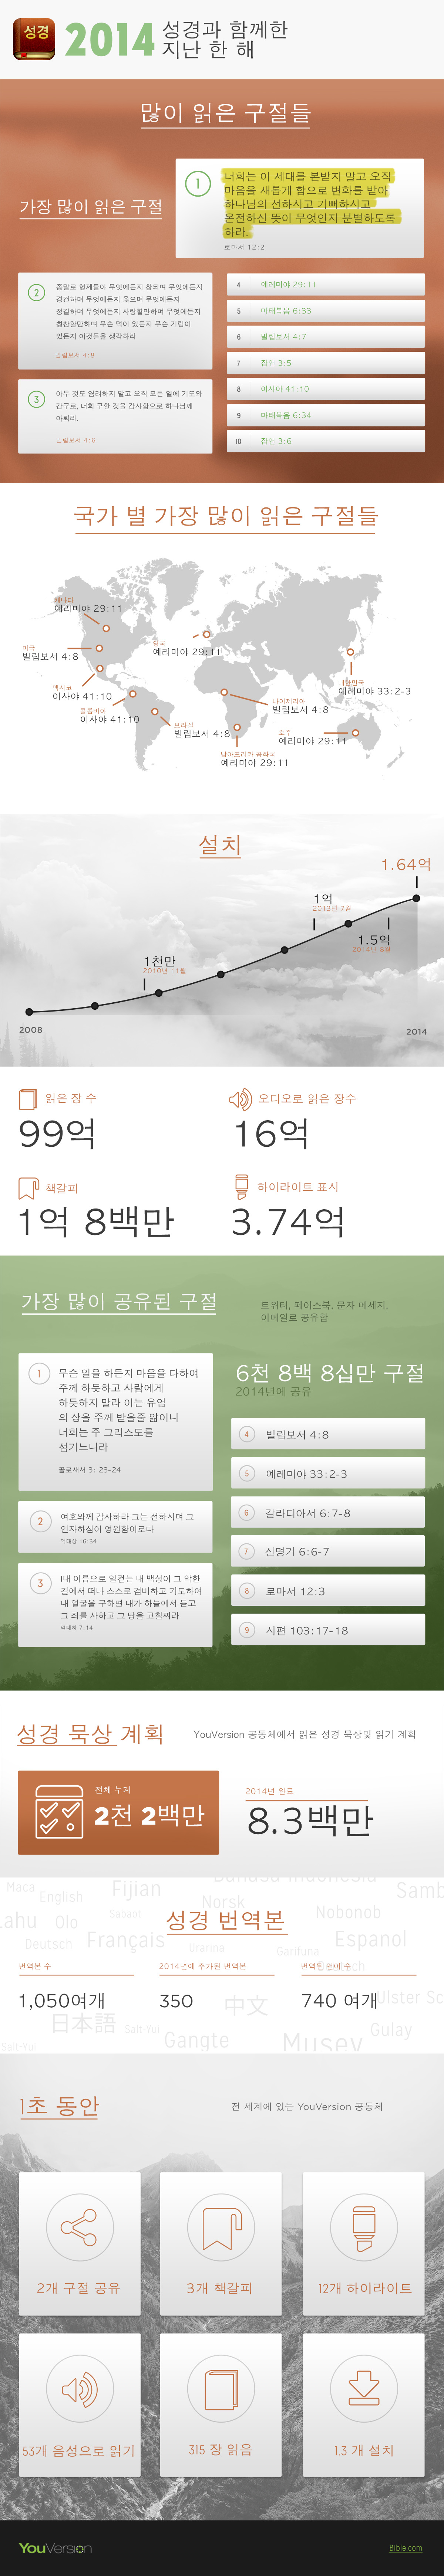 2014-Infographic-Korean